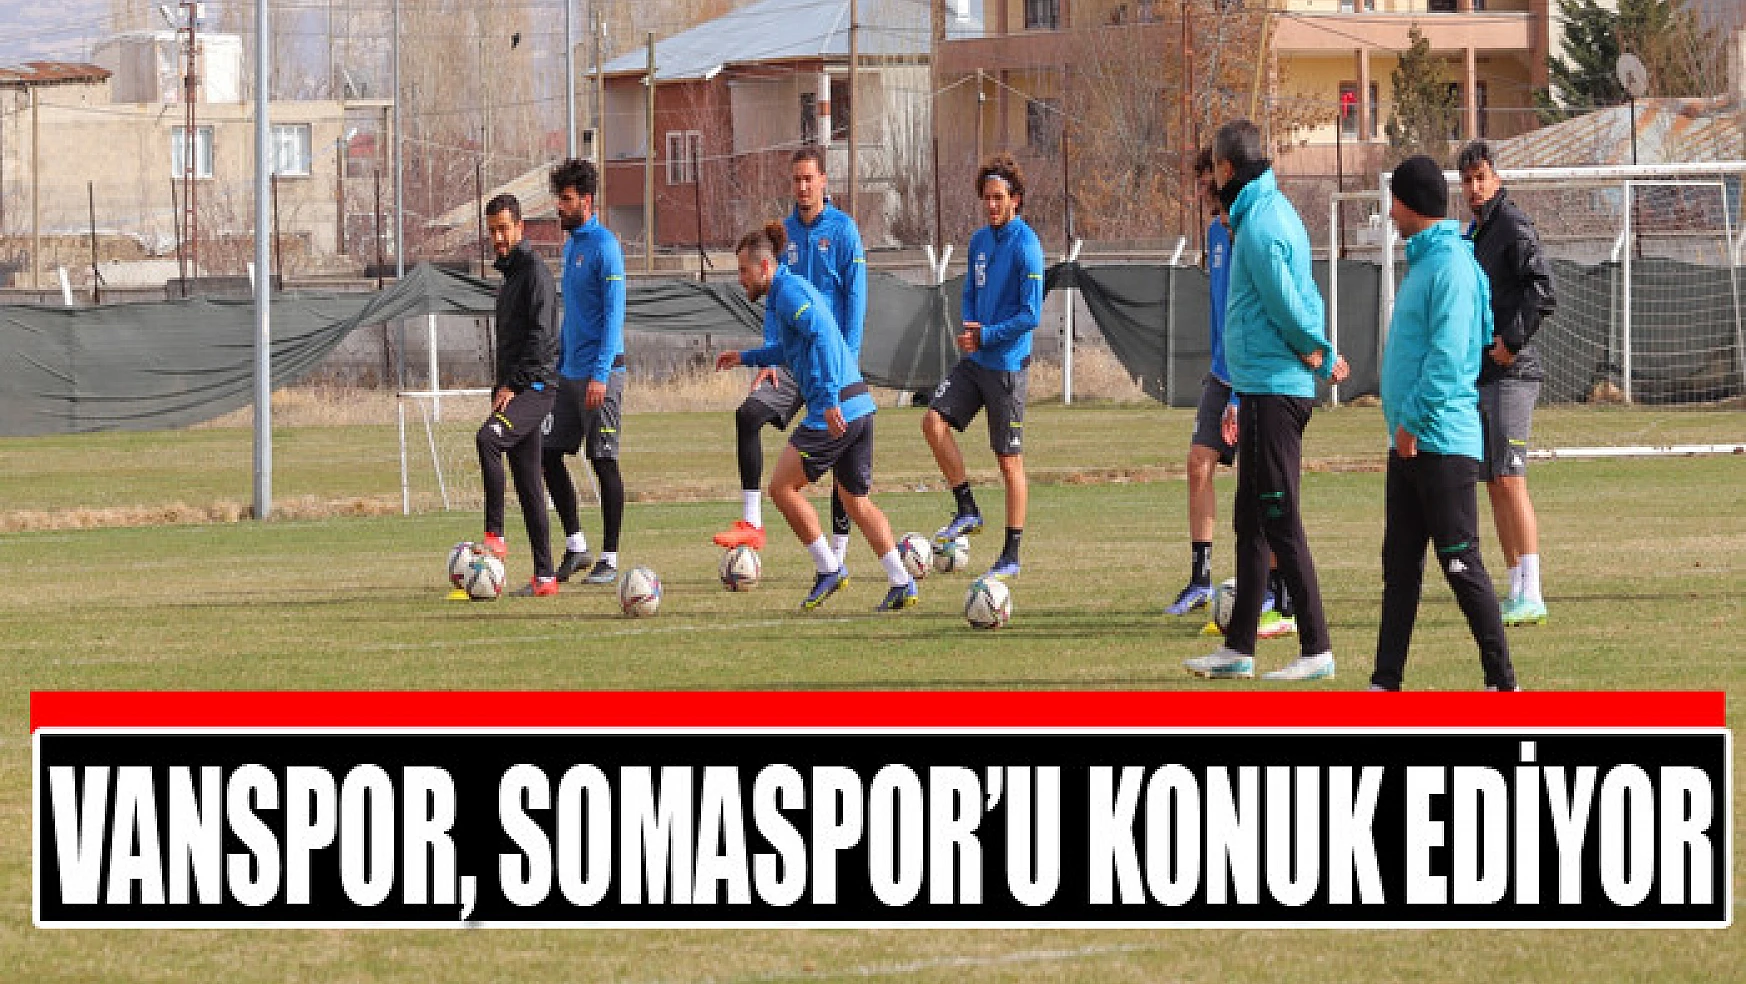 VANSPOR, SOMASPOR'U KONUK EDİYOR